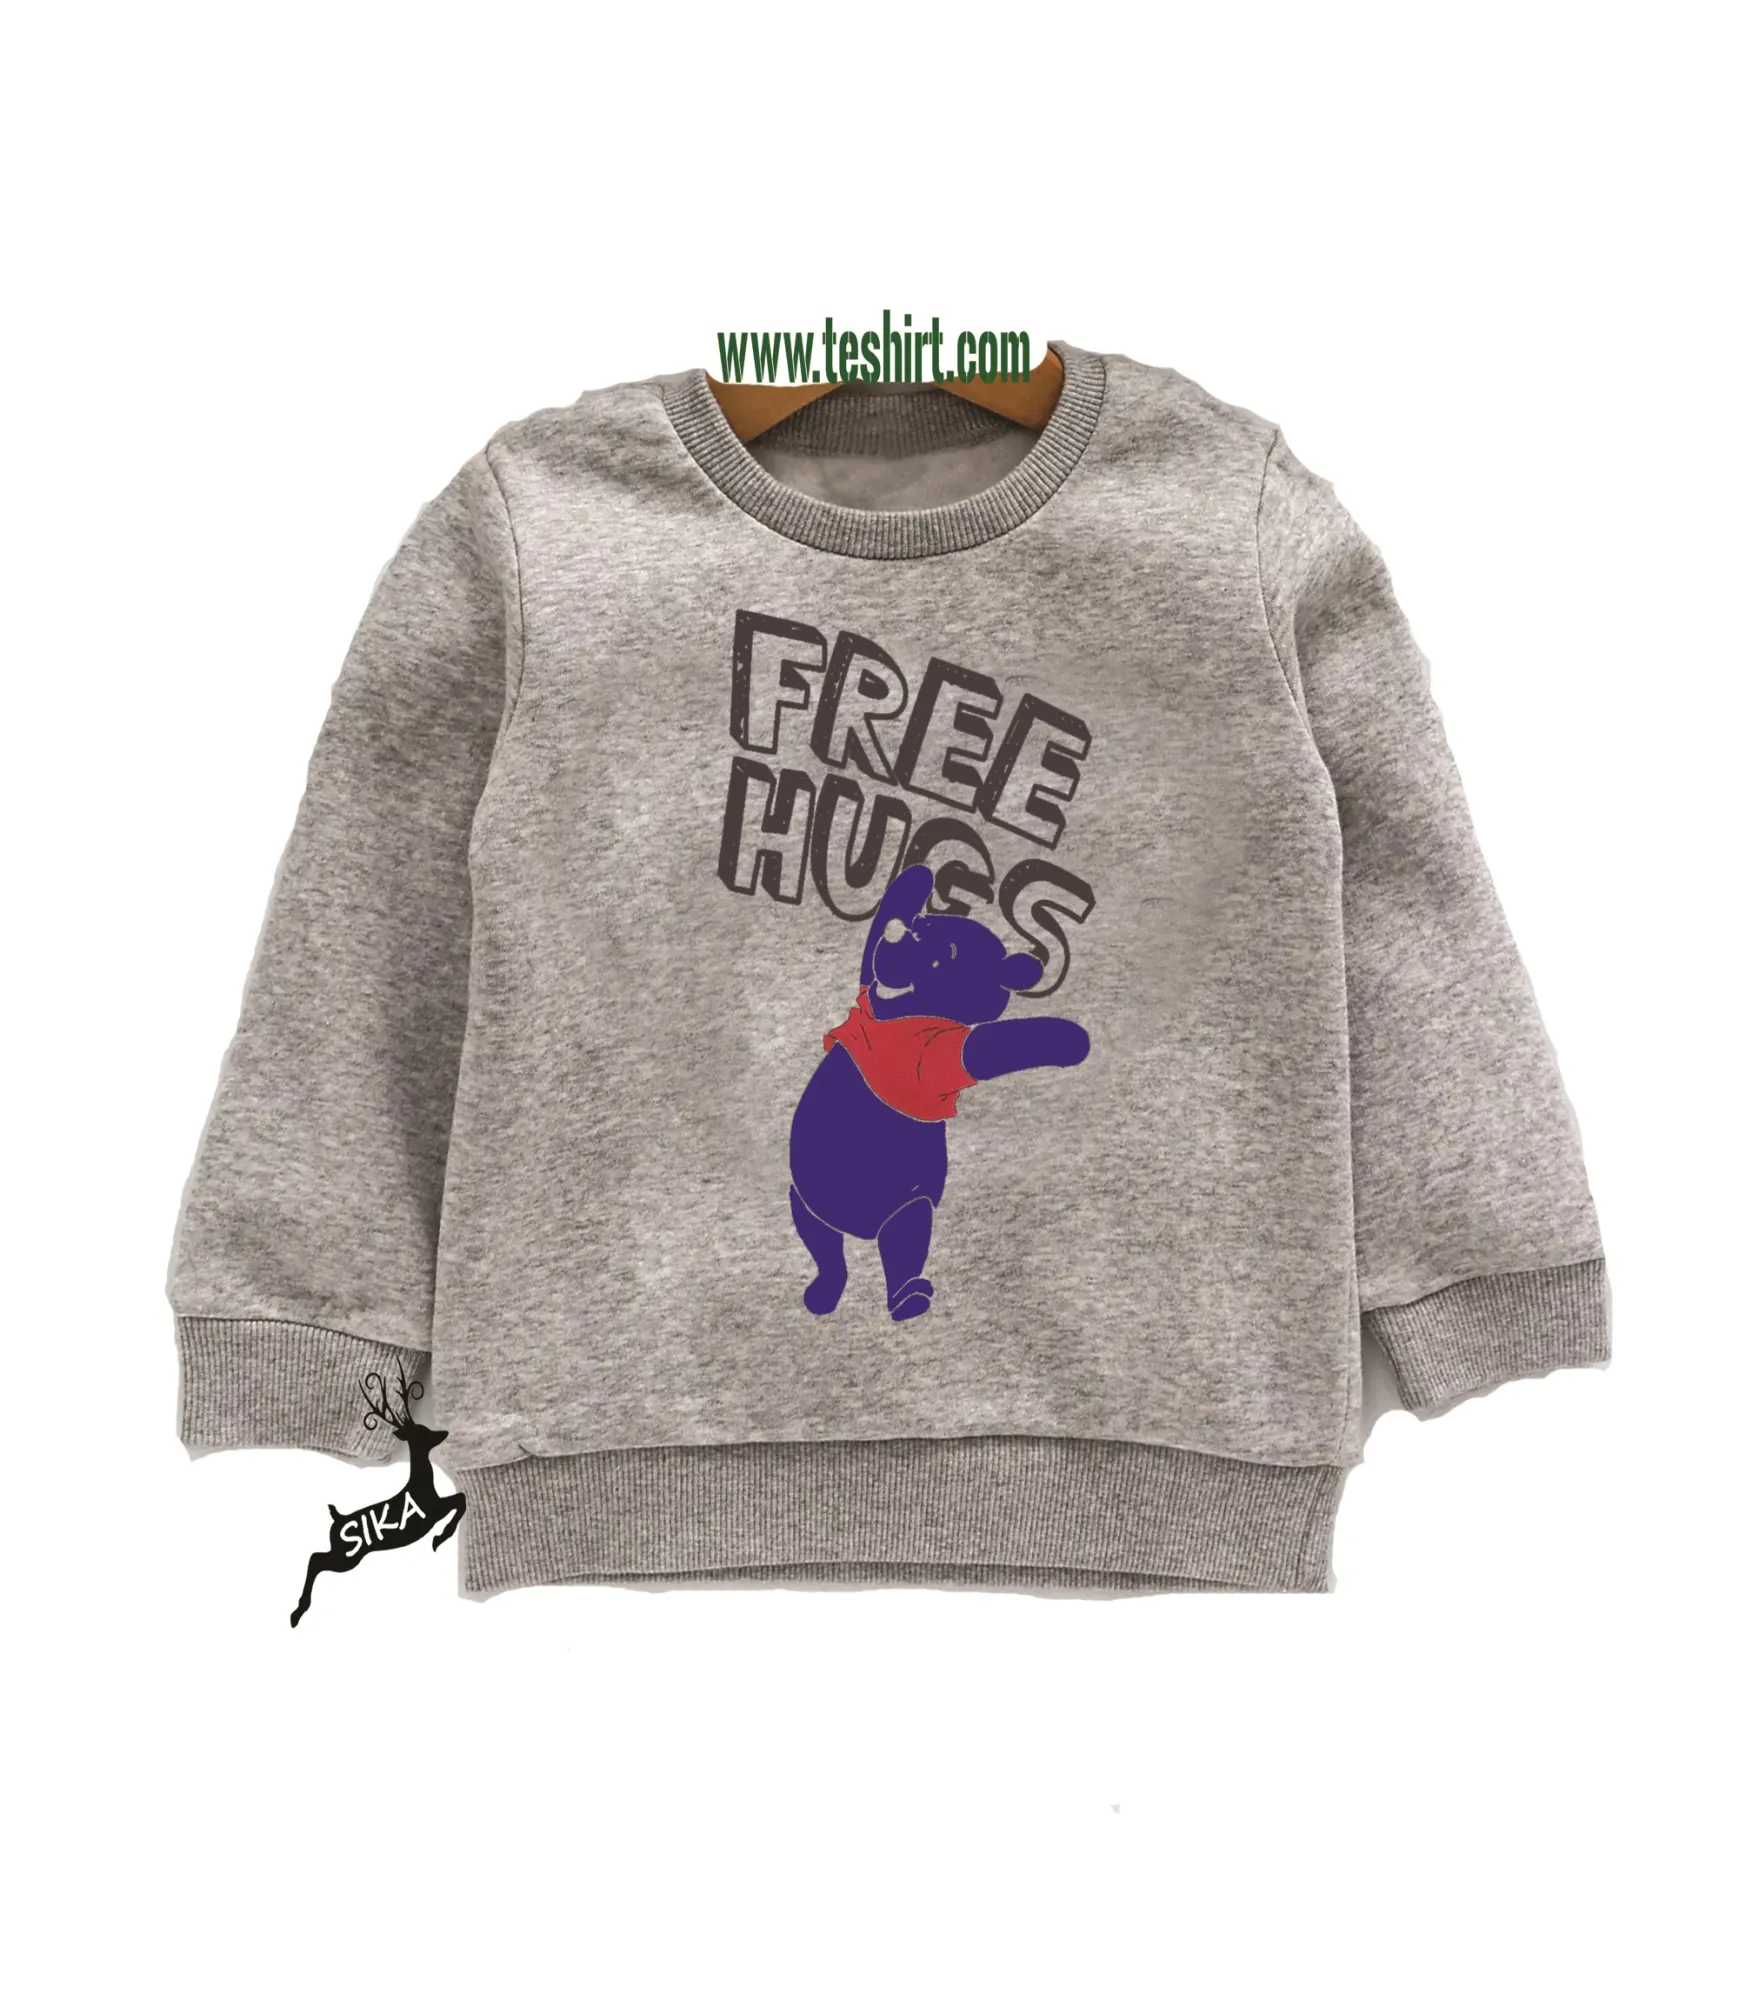 T-shirt d'hiver imprimé pour enfants, 2020, design à la mode, vente directe depuis l'usine, divers coloris